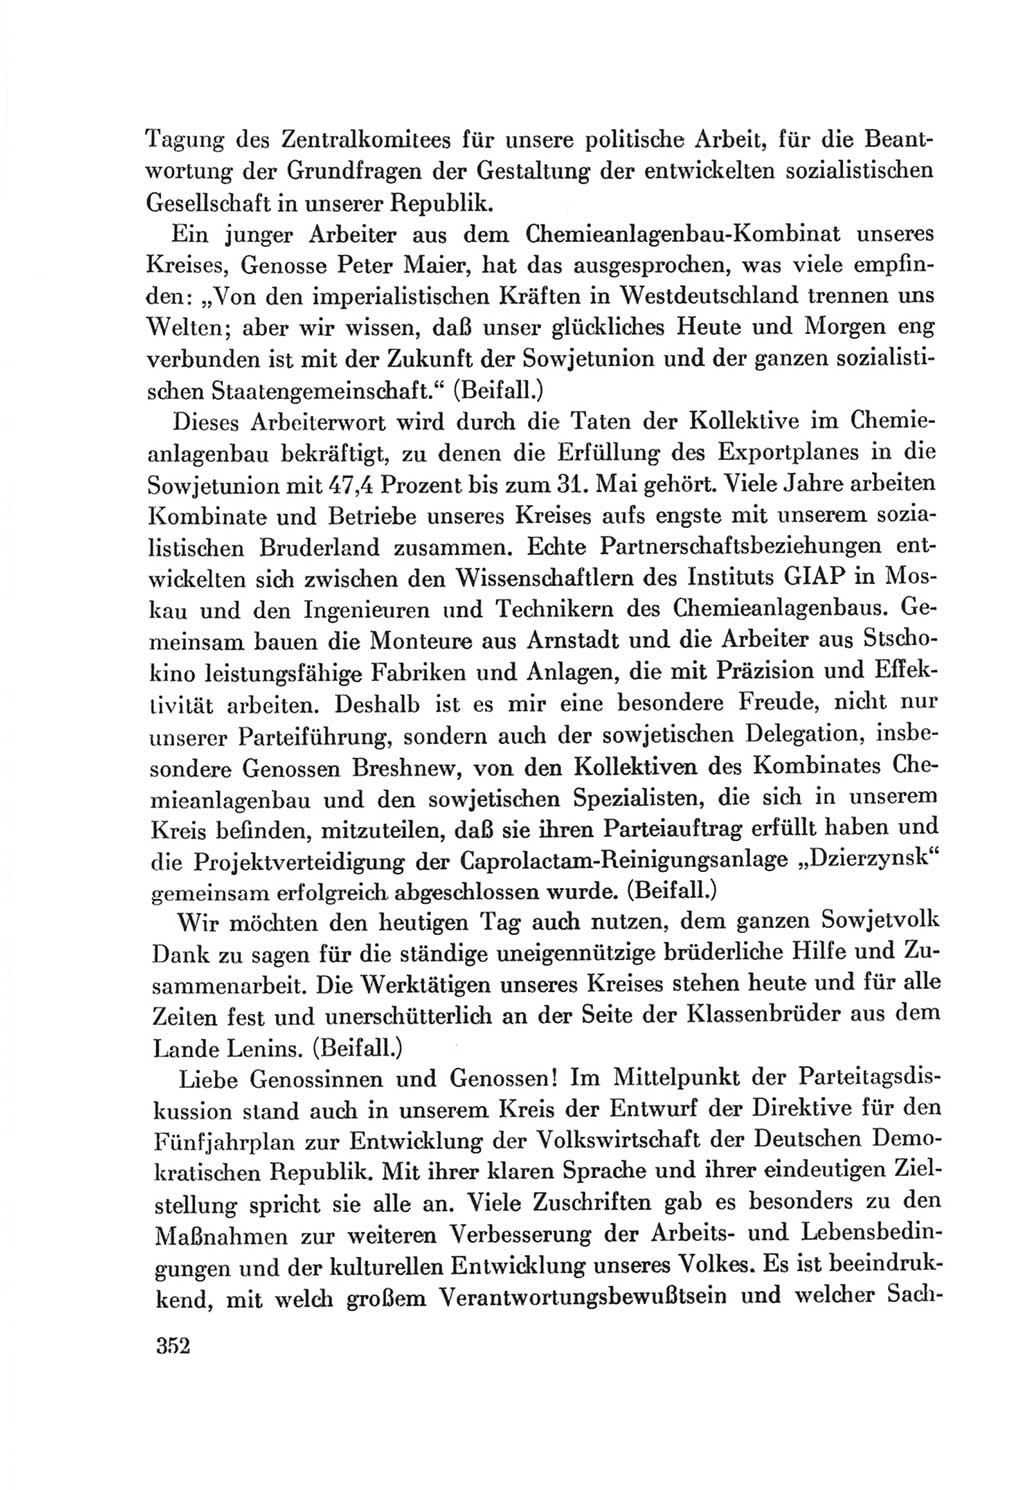 Protokoll der Verhandlungen des Ⅷ. Parteitages der Sozialistischen Einheitspartei Deutschlands (SED) [Deutsche Demokratische Republik (DDR)] 1971, Band 1, Seite 352 (Prot. Verh. Ⅷ. PT SED DDR 1971, Bd. 1, S. 352)